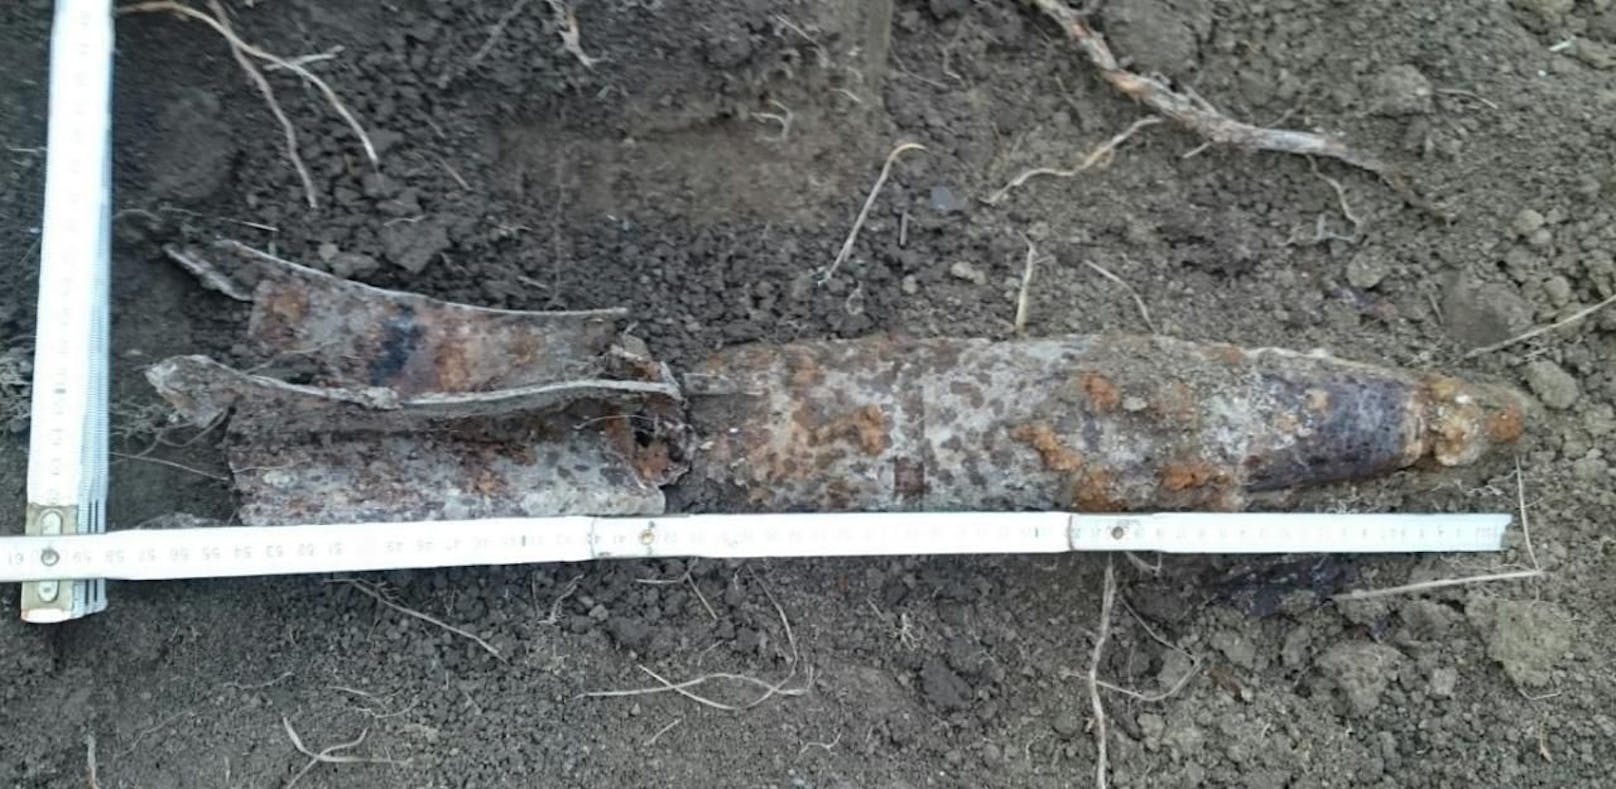 Eine Artilleriegranate wurde bei Grabarbeiten aufgefunden.